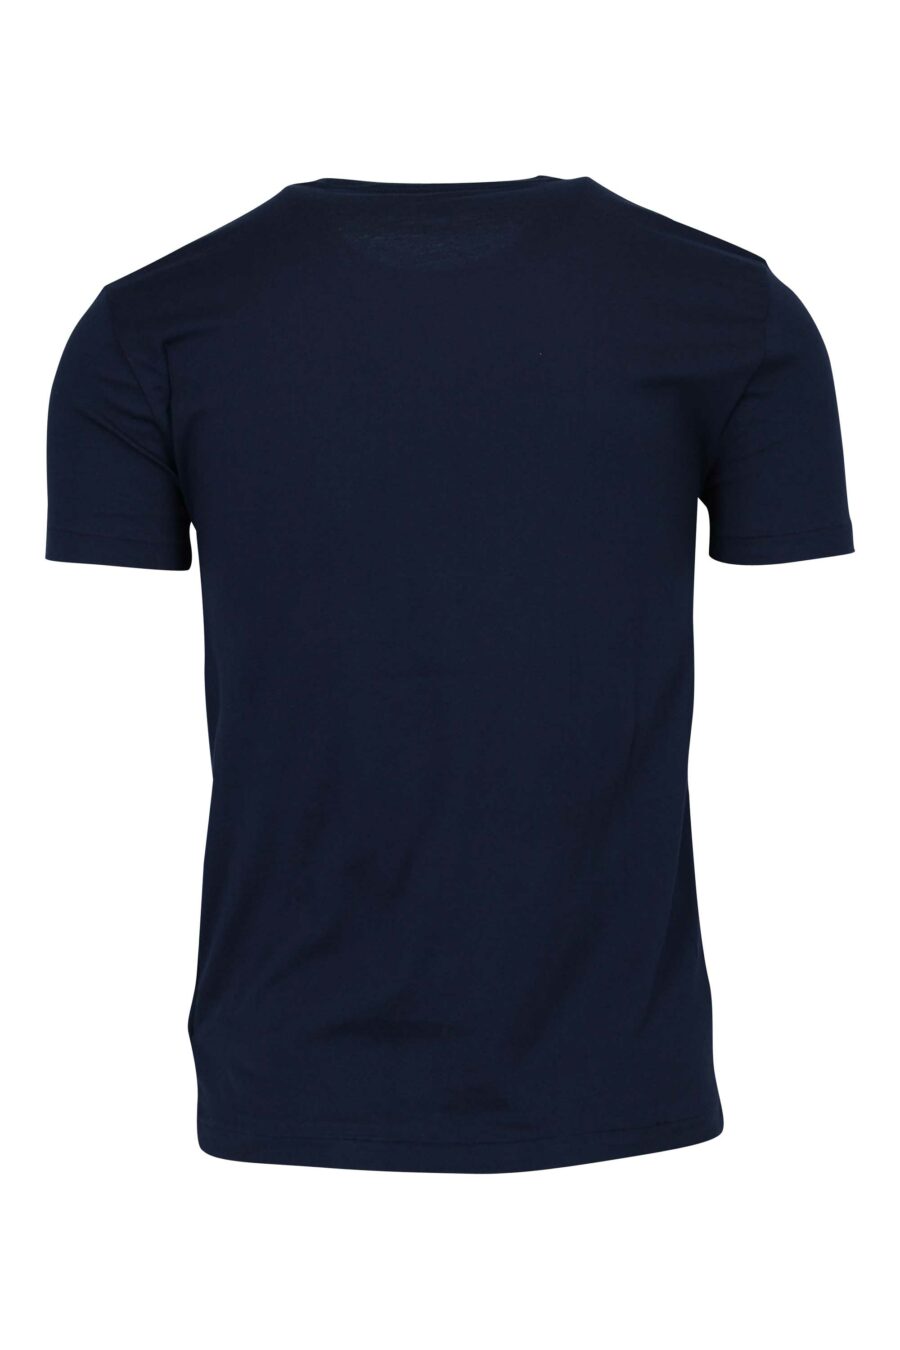 Polo Ralph Lauren - Camiseta azul oscuro con minilogo polo - BLS Fashion